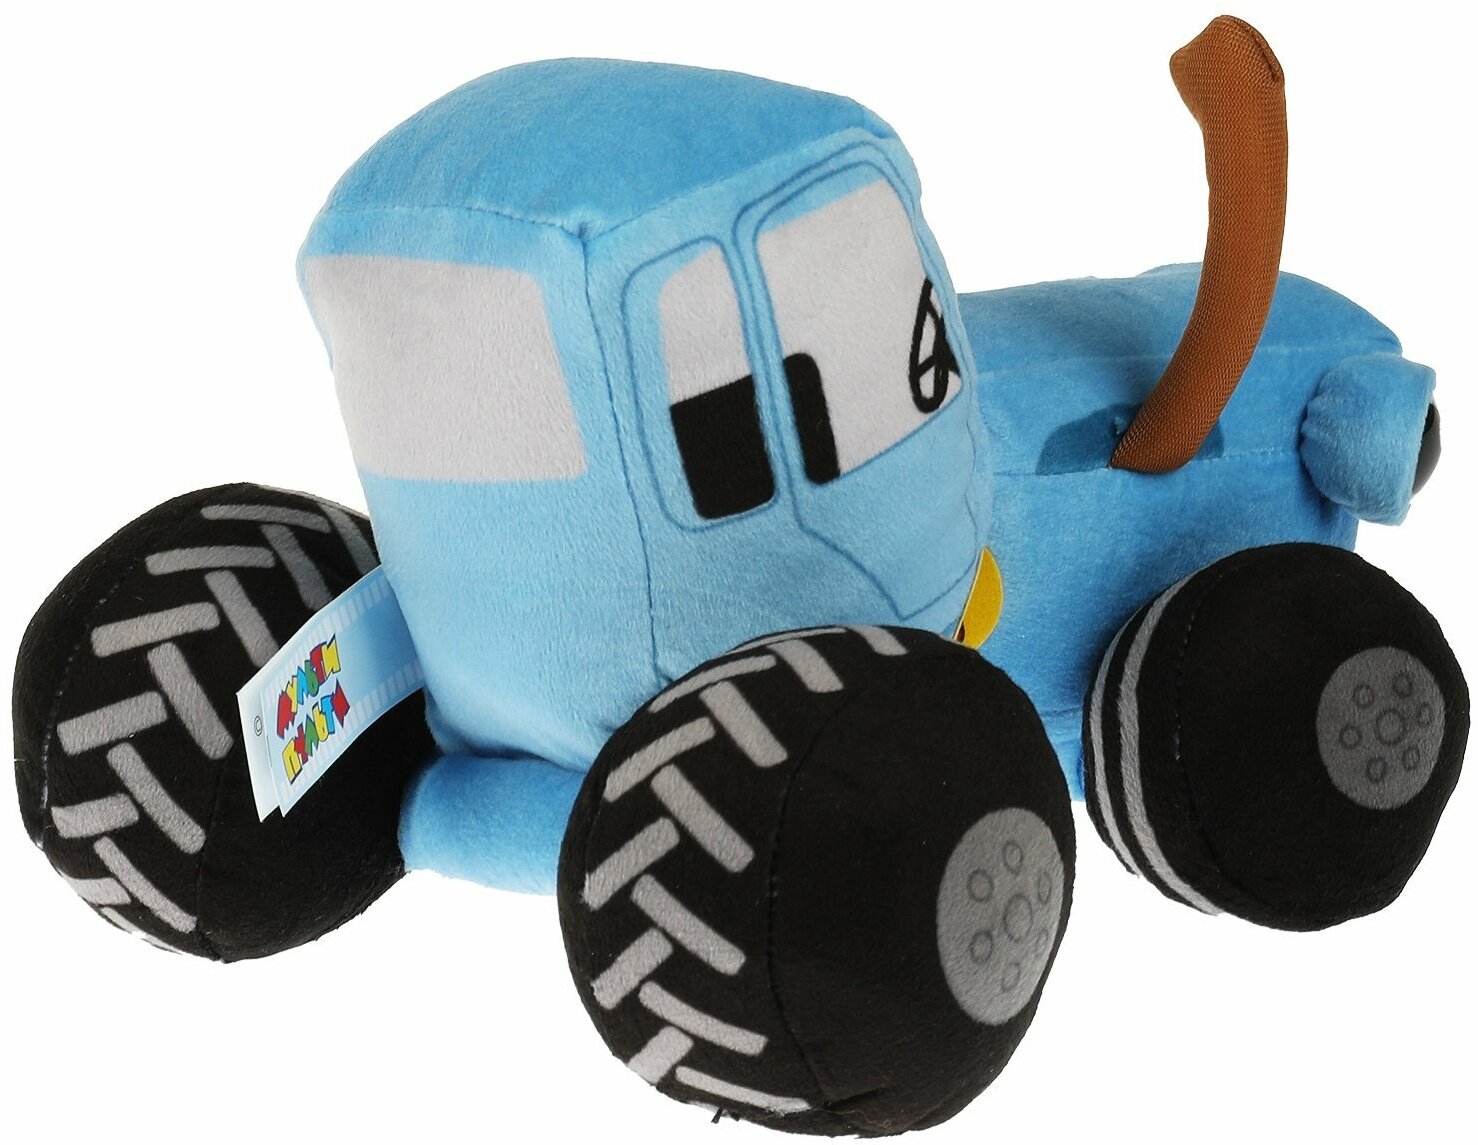 Мягкая игрушка Мульти-пульти Синий Трактор 20 см, музыкальный чип, глаза-глиттер (C20118-20A)